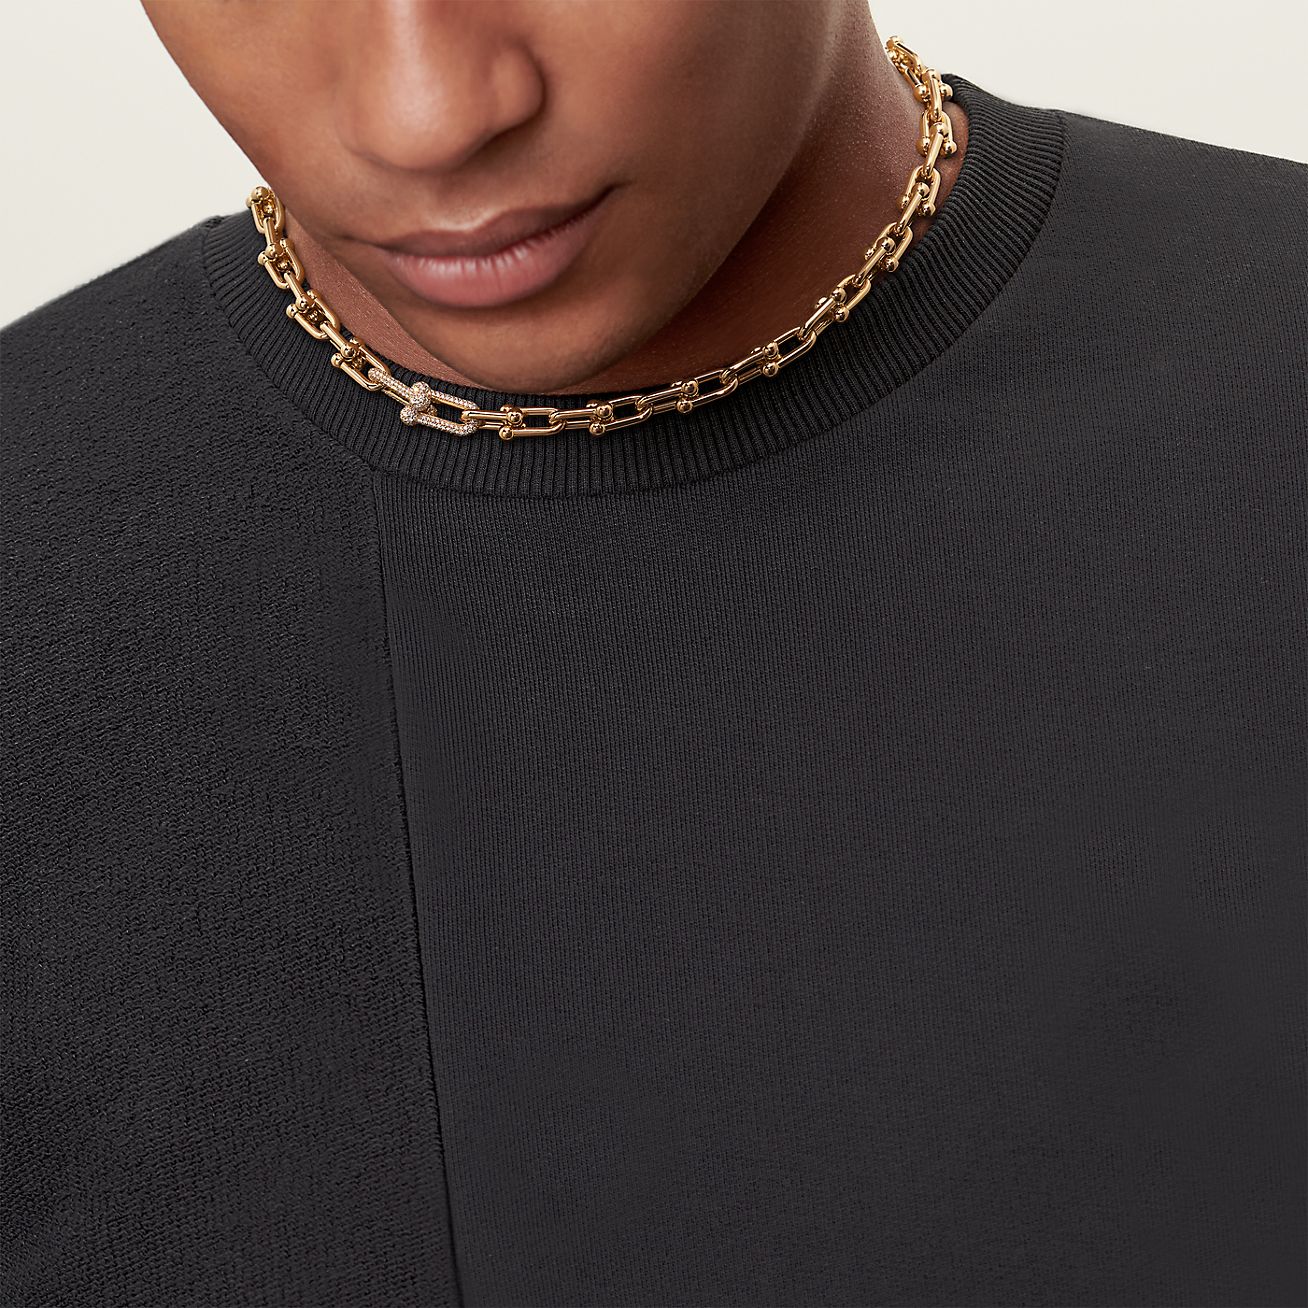 Tiffany Hardwear Men's Sterling Silver Necklaces & Pendants | Tiffany & Co.